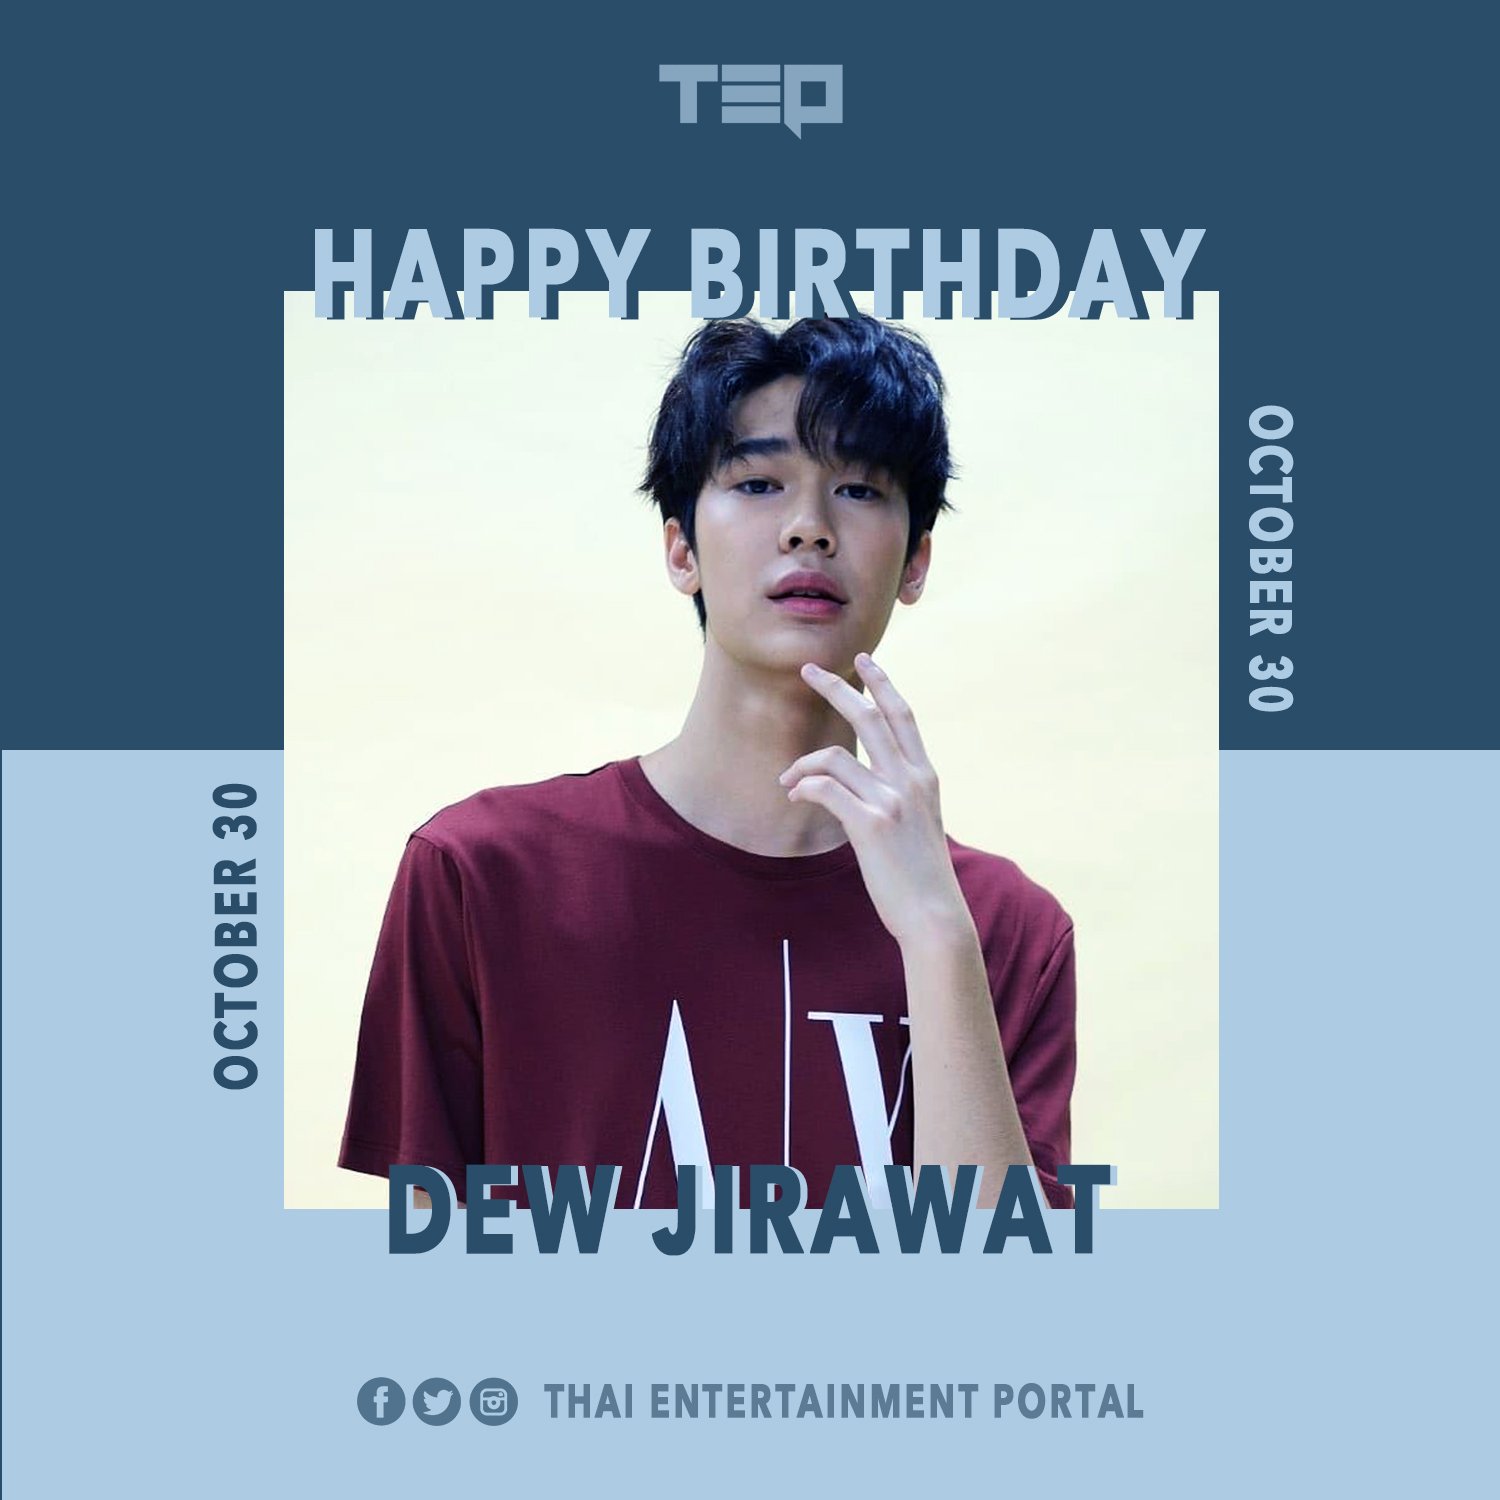 Dew jirawat birthday